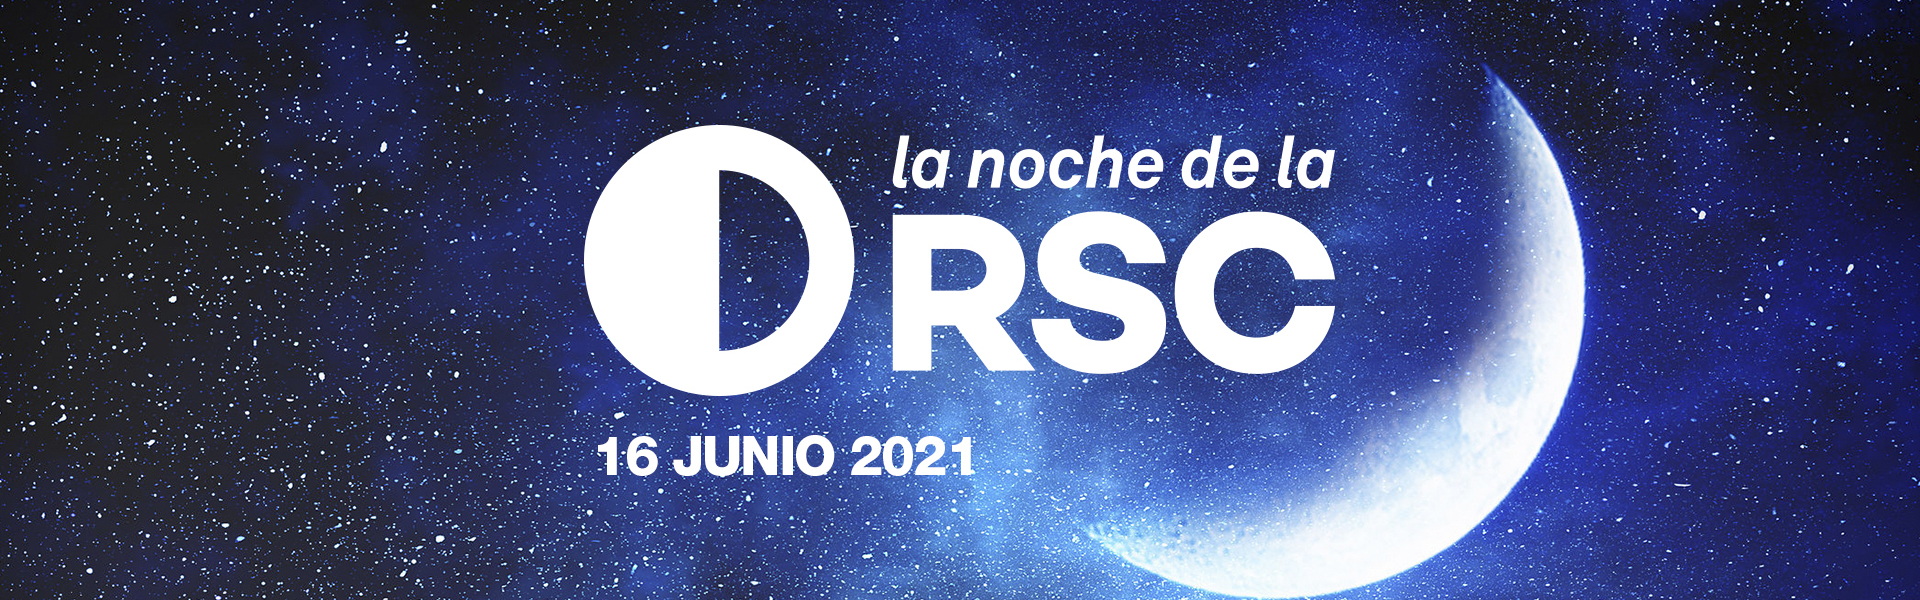 La Cátedra de RSC de la UMU celebra la III edición de la #NocheRSC, un evento que pondrá en valor la apuesta por la sostenibilidad de las empresas e instituciones murcianas